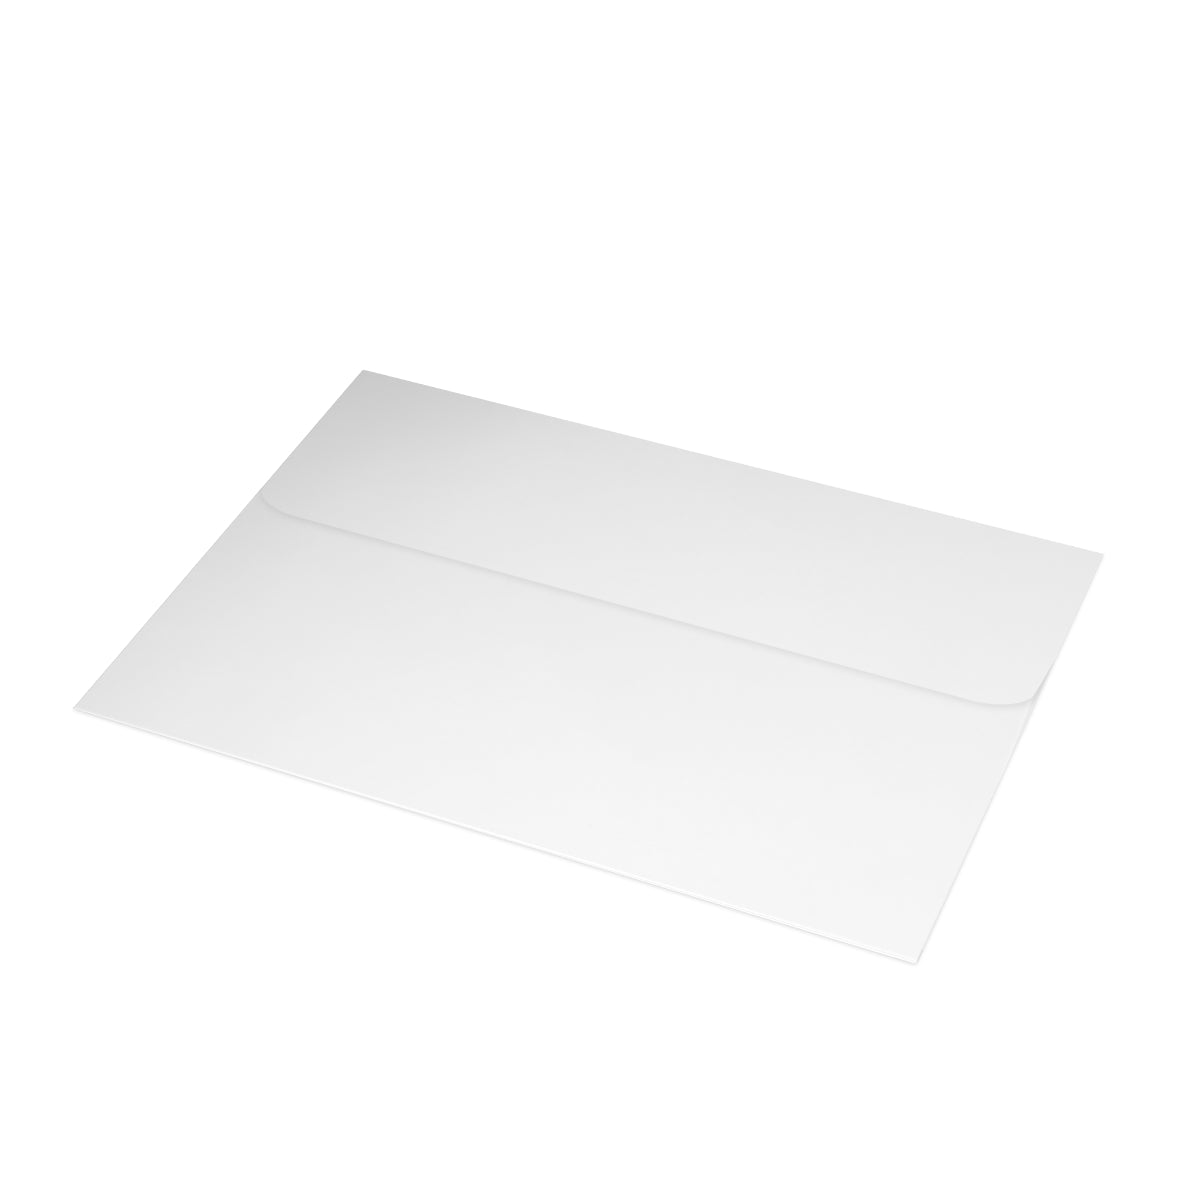 Cartes de notes mates pliées Red Rock Canyon + enveloppes (10 pièces) 